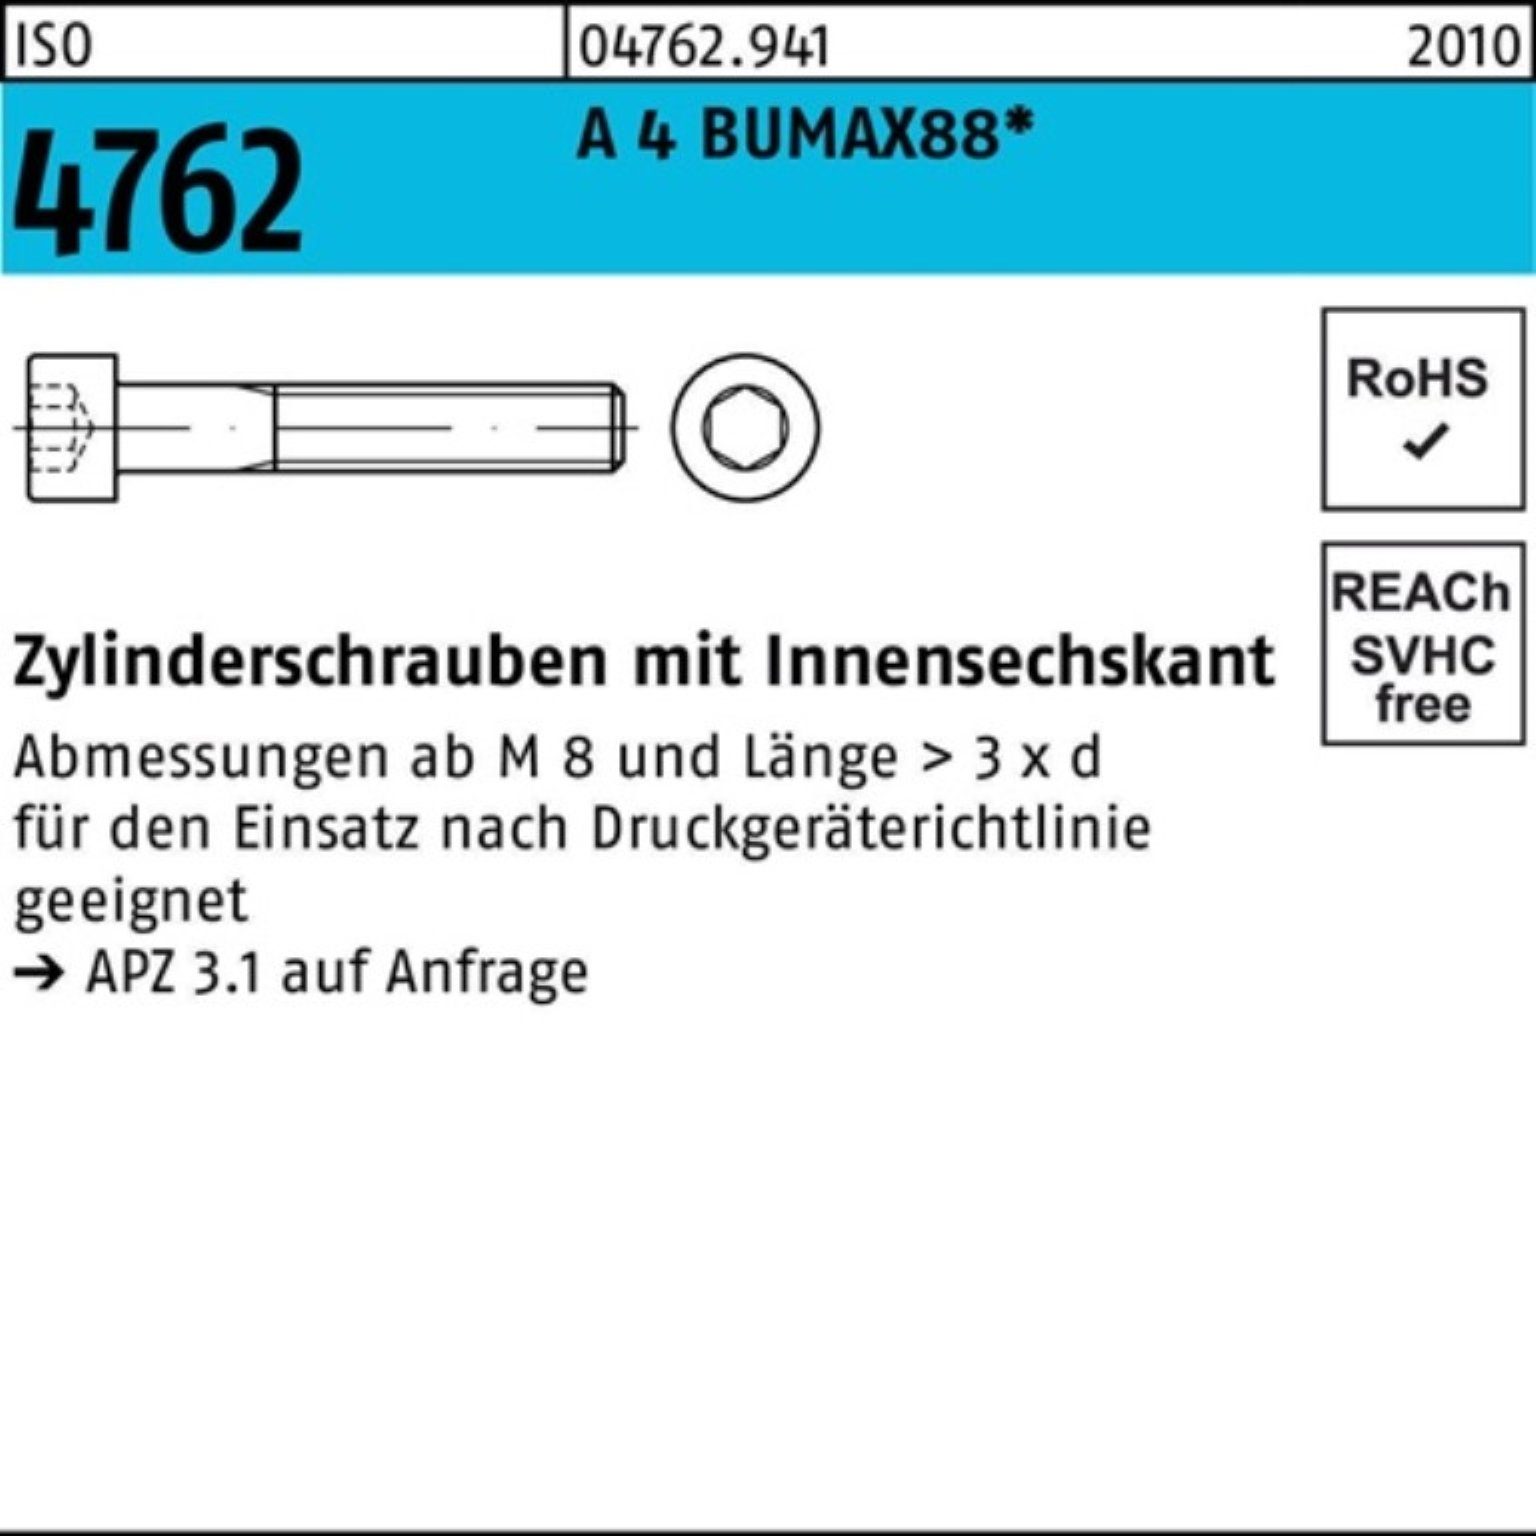 Originalprodukt-Versandhandel Bufab Zylinderschraube 500er Pack BUMAX88 4762 Innen-6kt 500 16 M3x Zylinderschraube ISO A 4